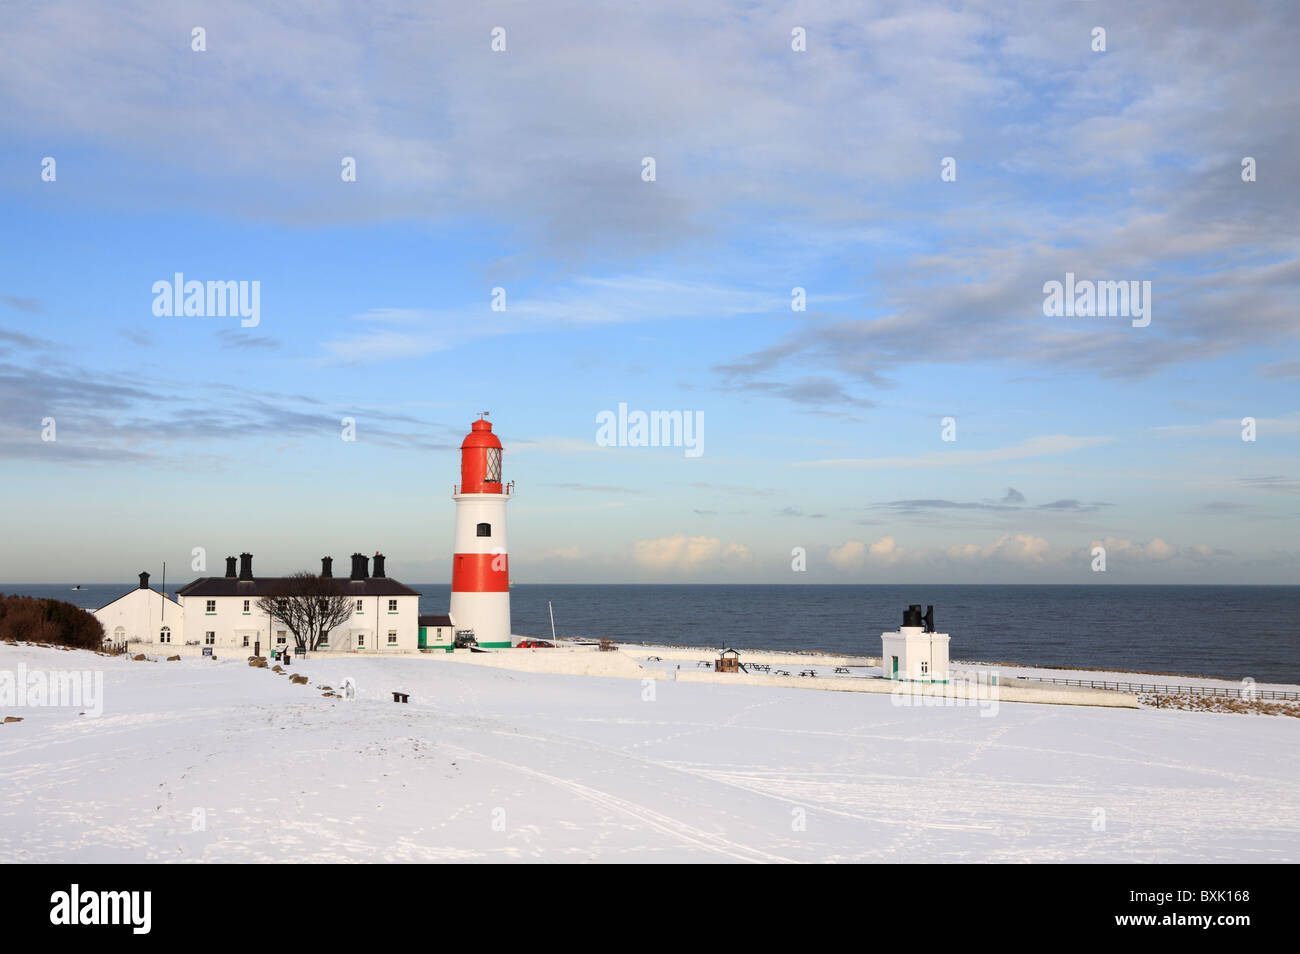 Souter faro e sirena antinebbia, Whitburn, con neve sul terreno. Inghilterra, Regno Unito. Foto Stock